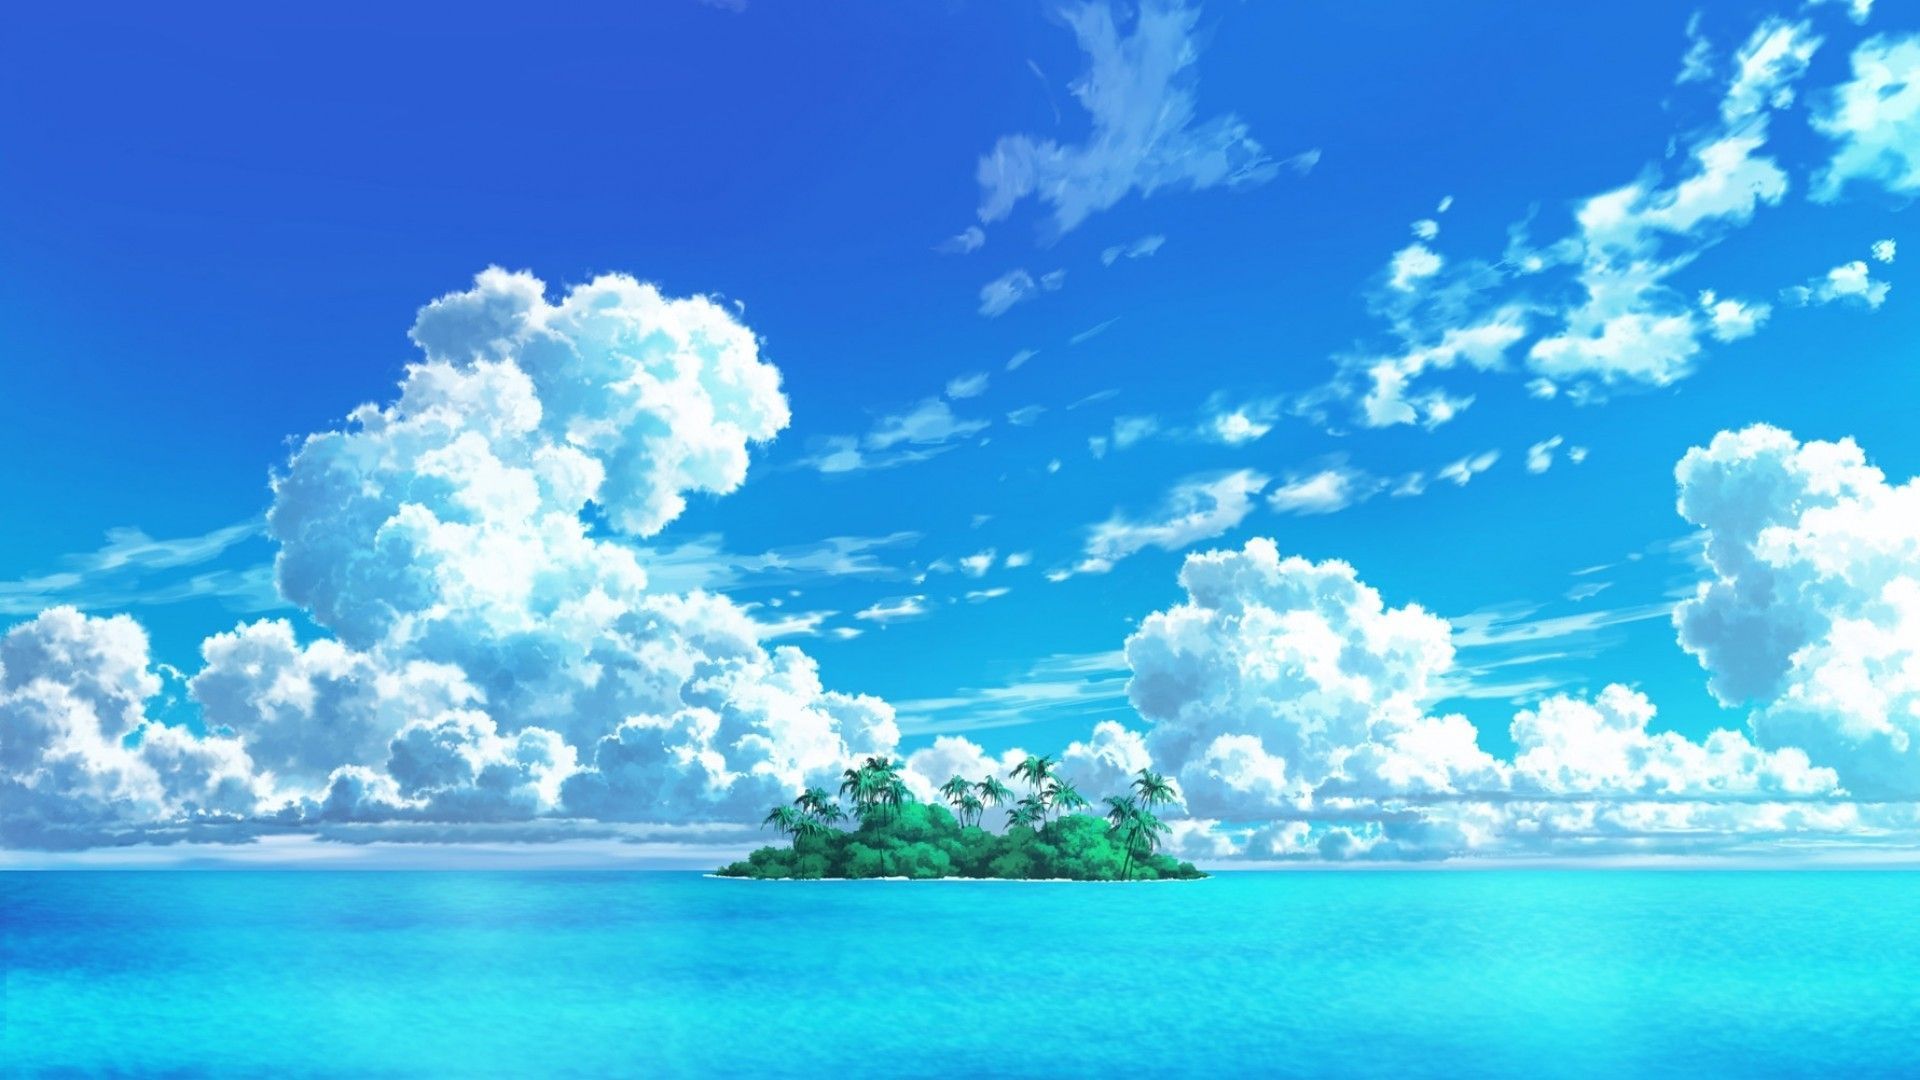 Hình nền anime đảo là nguồn cảm hứng tuyệt vời cho những người yêu thích thiên nhiên và mơ ước khám phá những nơi chưa từng đặt chân. Hãy thưởng thức bức ảnh này và tìm thấy sự yên bình và trọn vẹn ở một hòn đảo xa xôi, giữa vùng biển bao la.